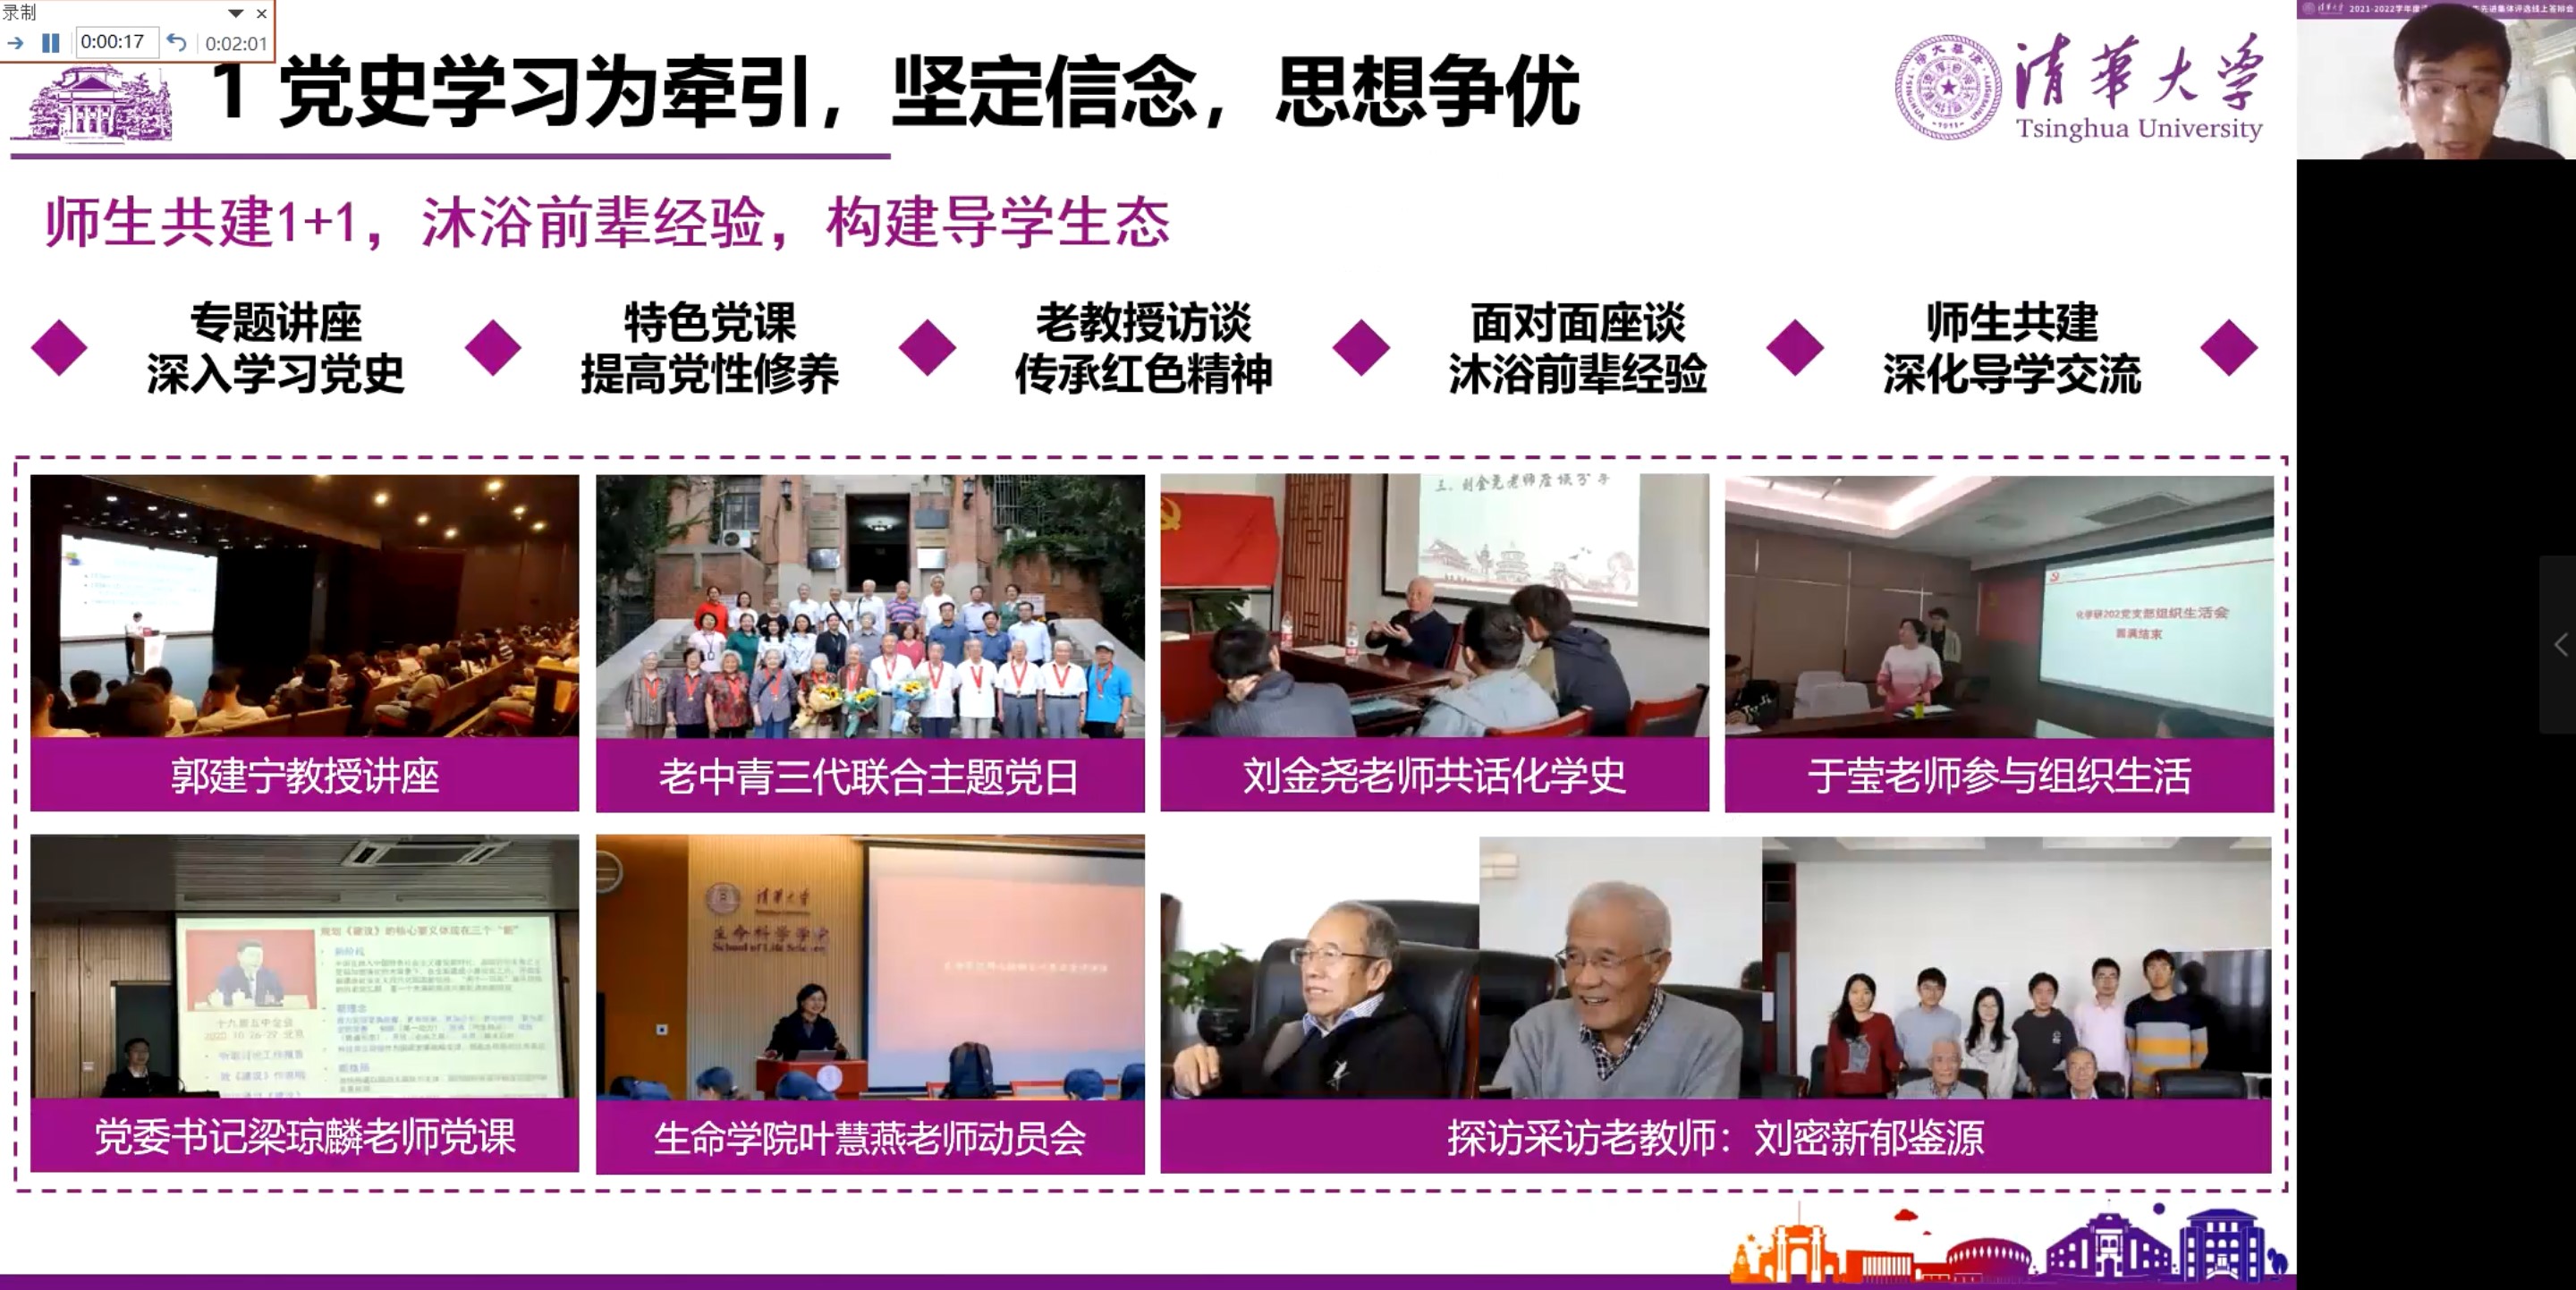 20220527-清华大学研究生先进集体答辩会-研工部-照片3.jpg